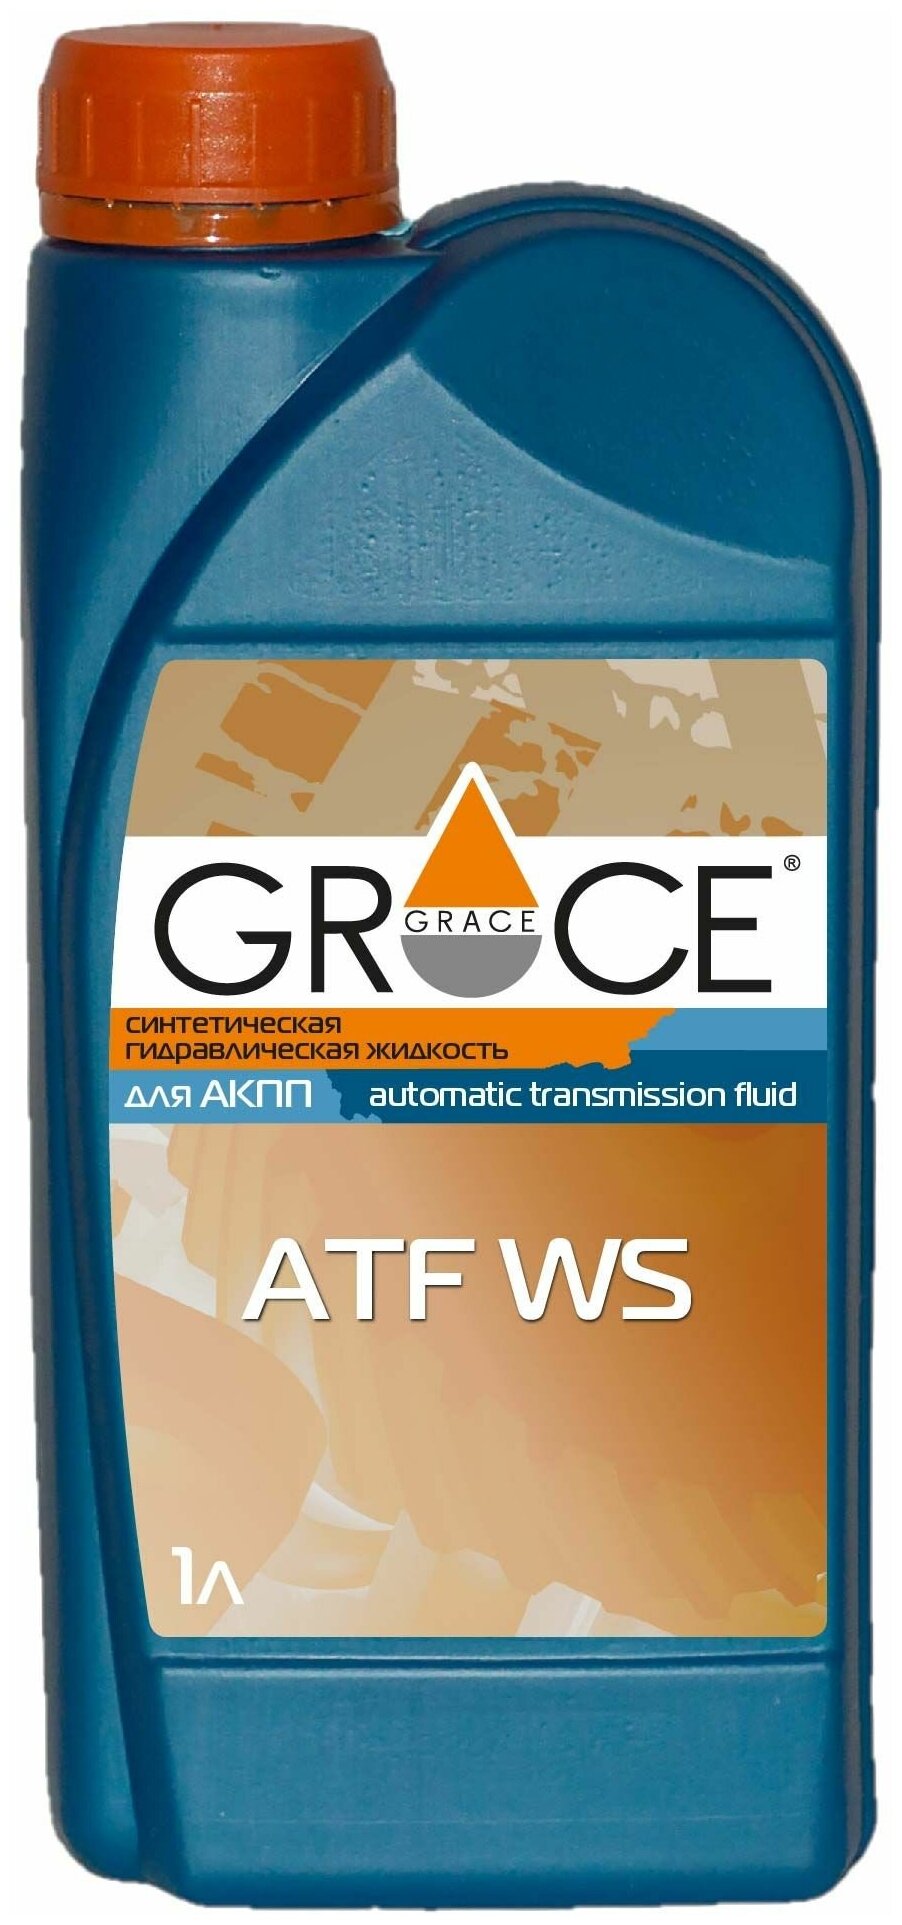 Трансмиссионное масло Grace ATF WS, 1 литр